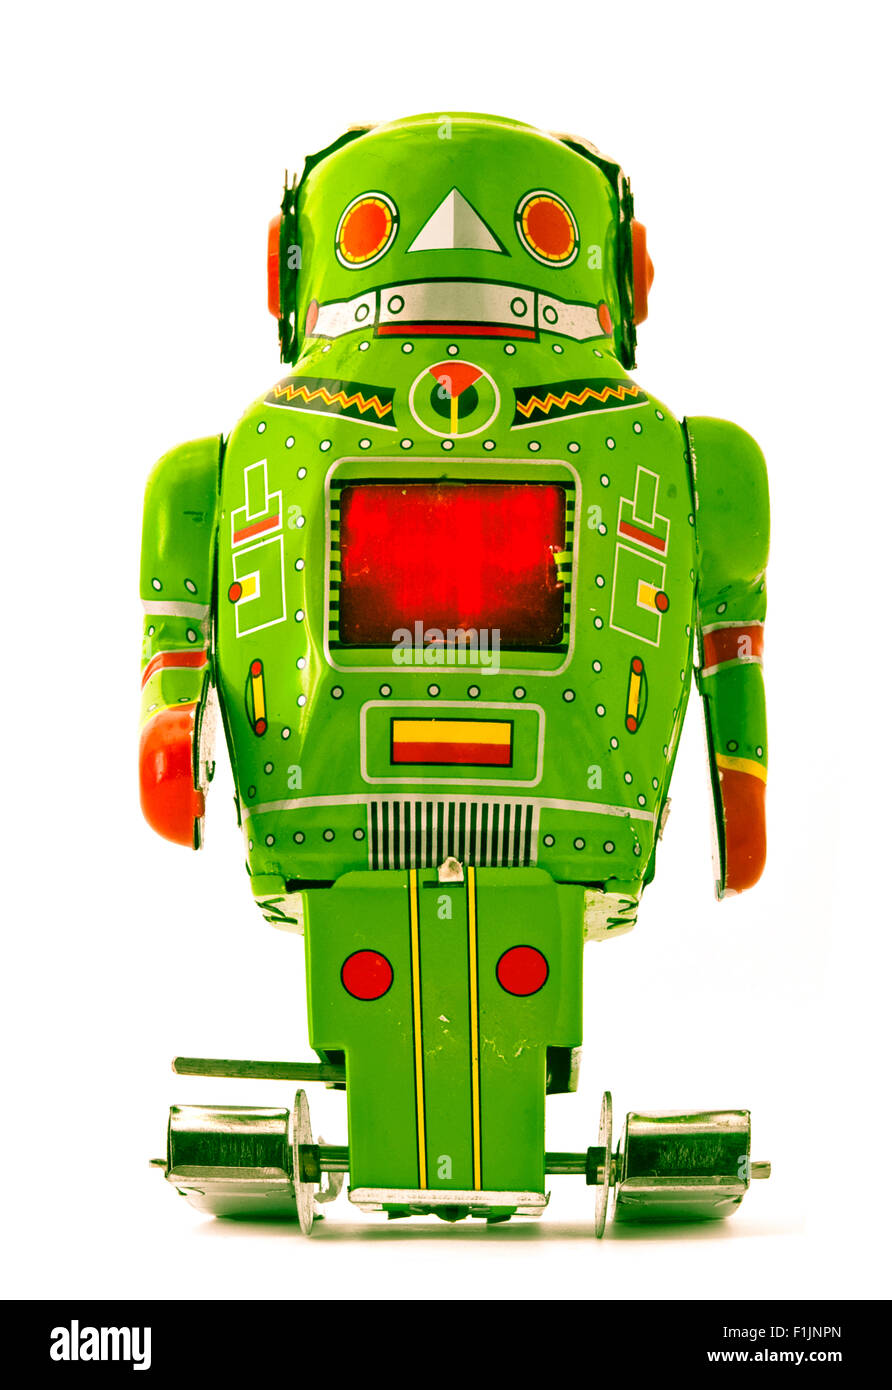 retro green robot toy Stock Photo